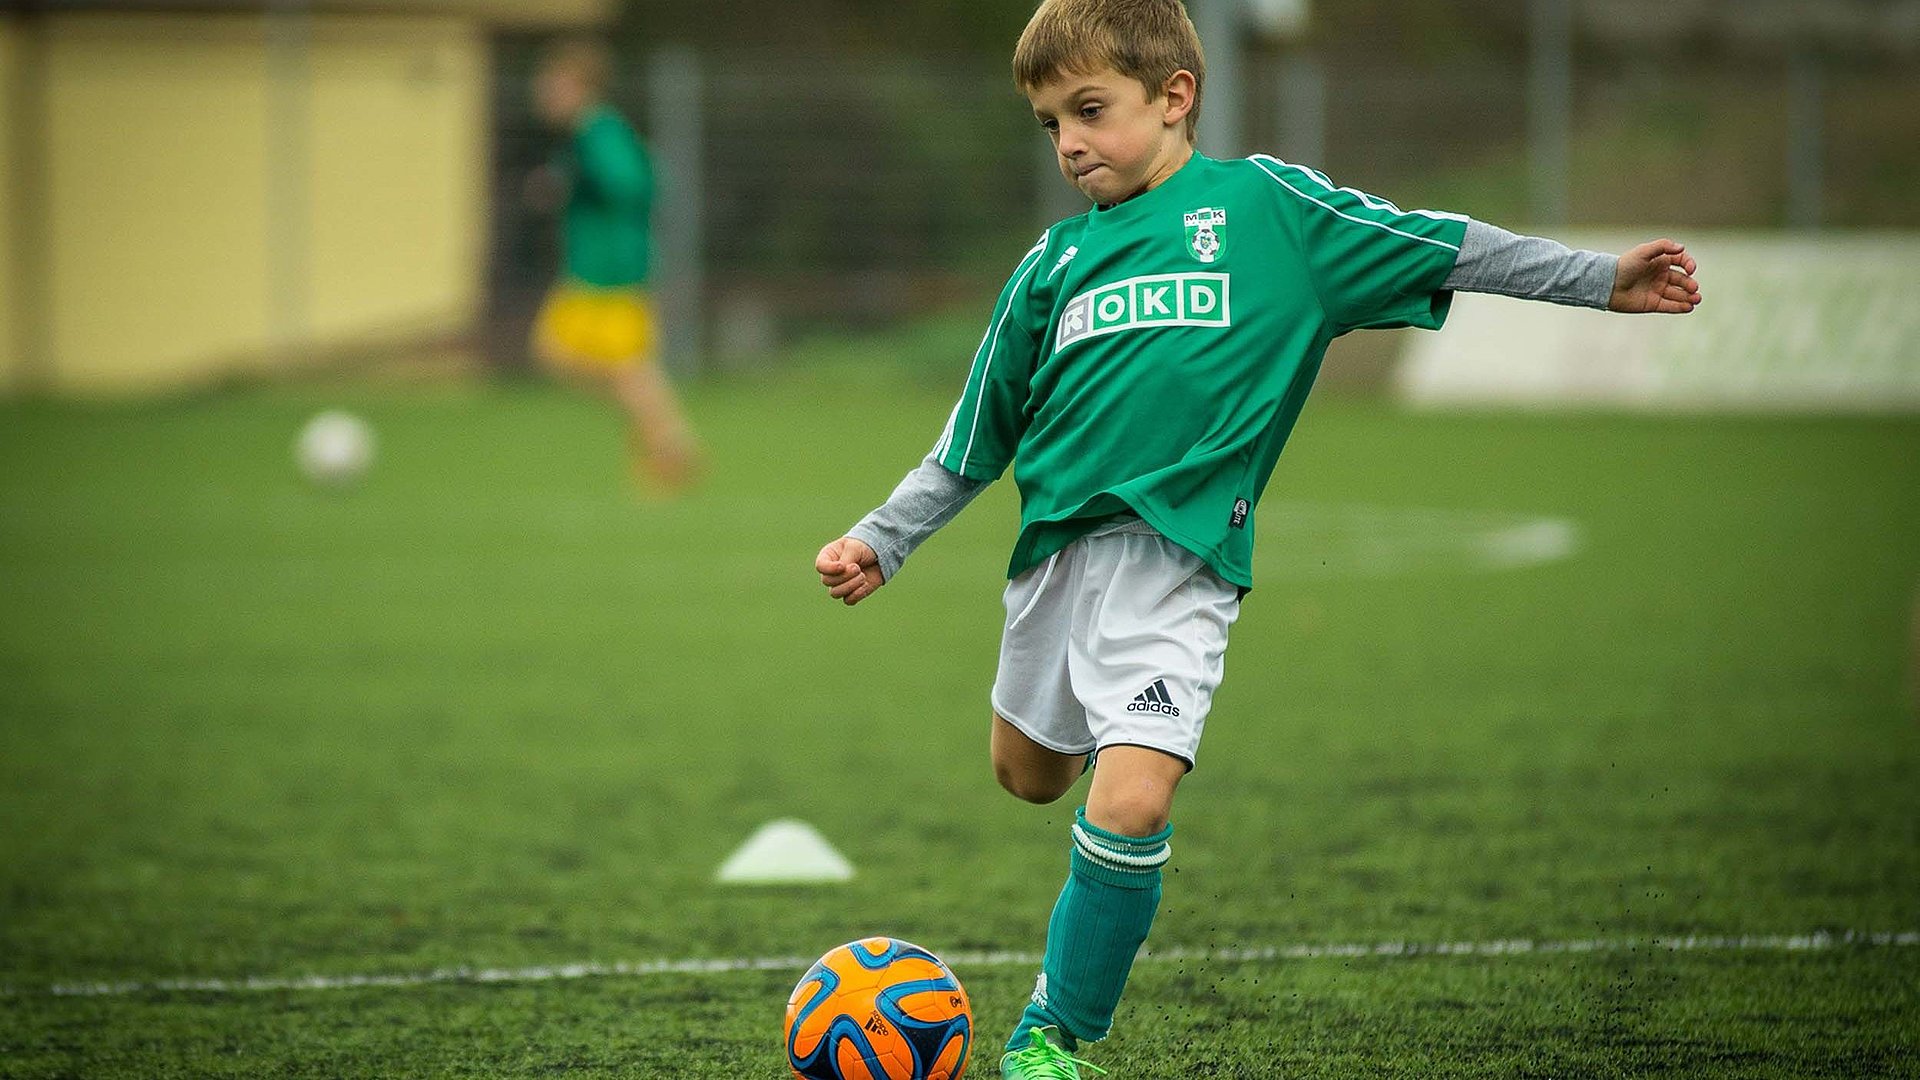 Freizeitangebote Outdoor in Nürnberg - kleiner Junge in Fußballausrüstung setzt zum Schuss an